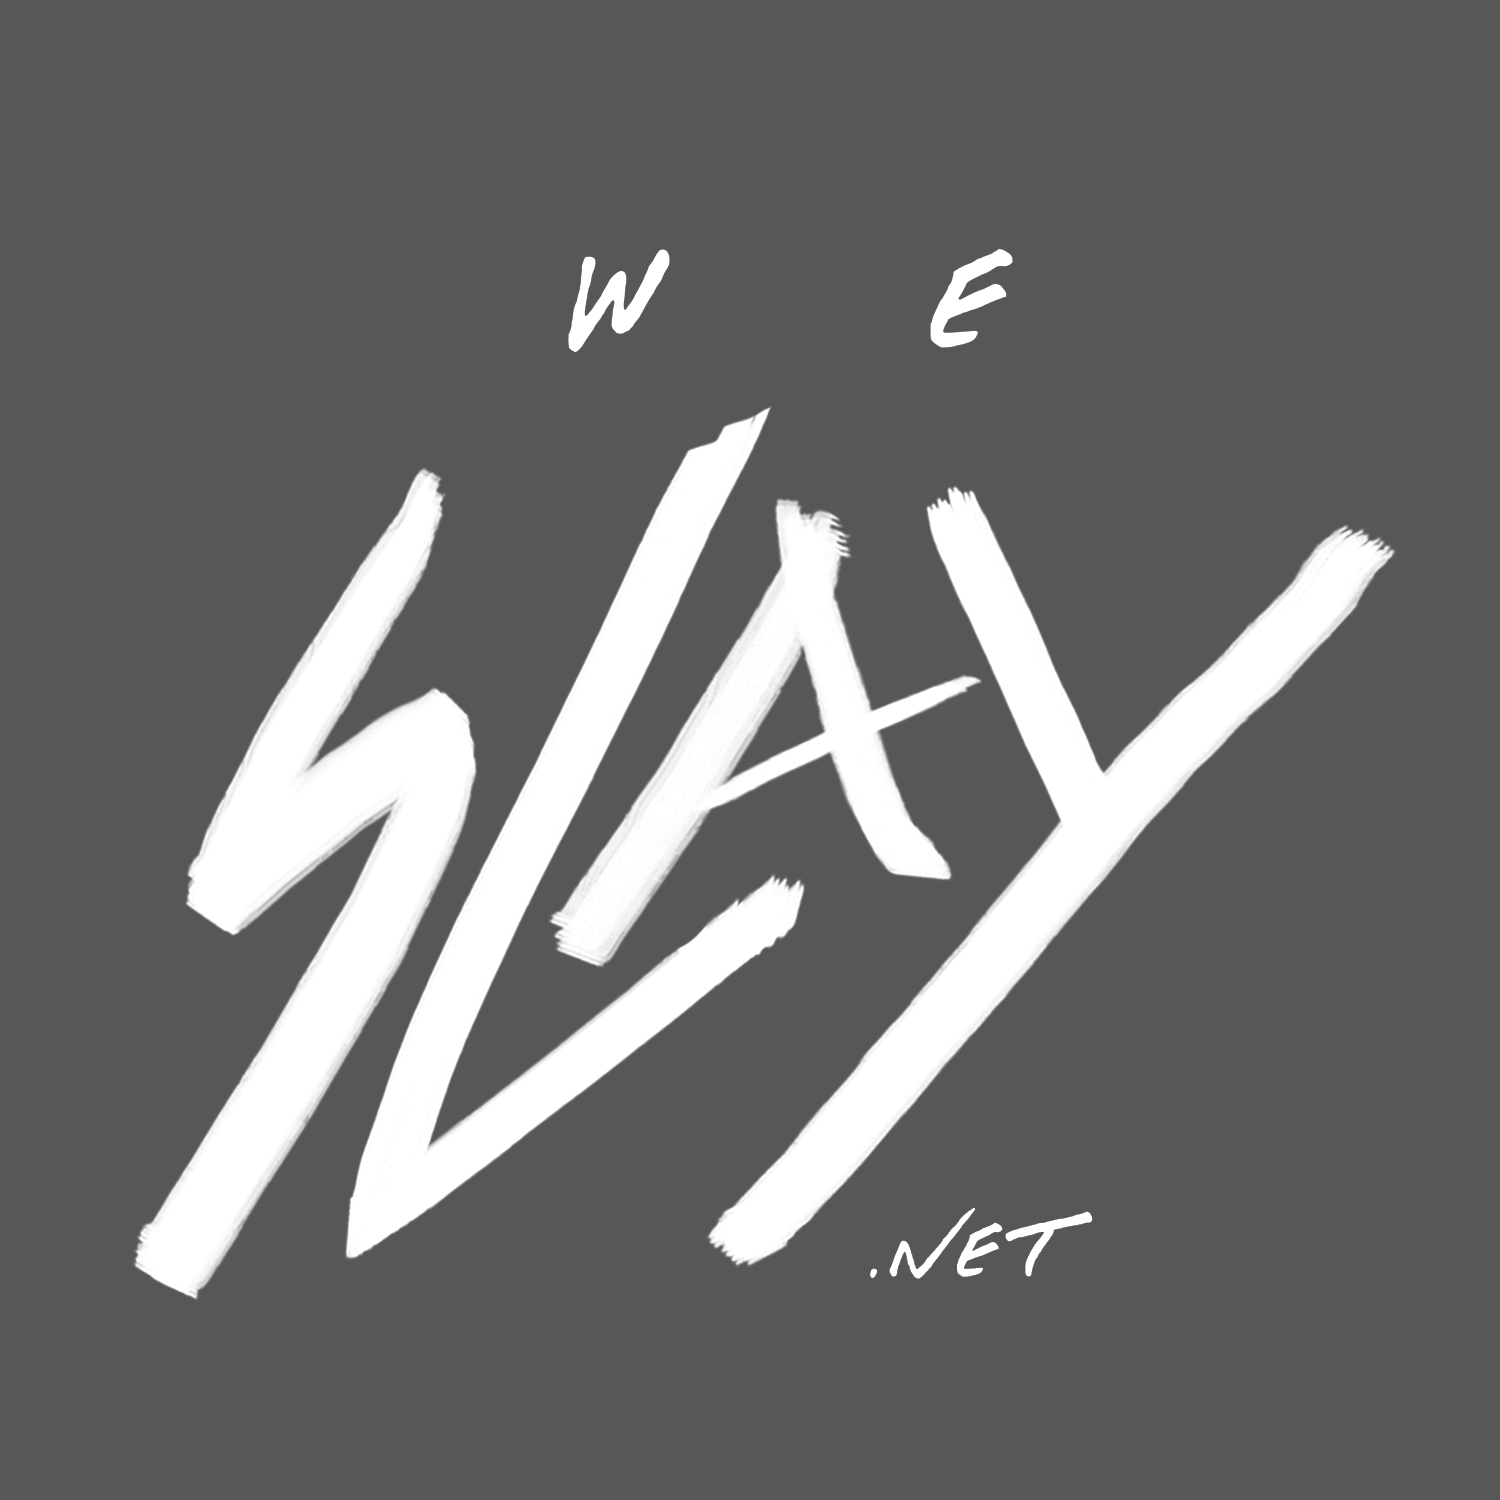 We Slay